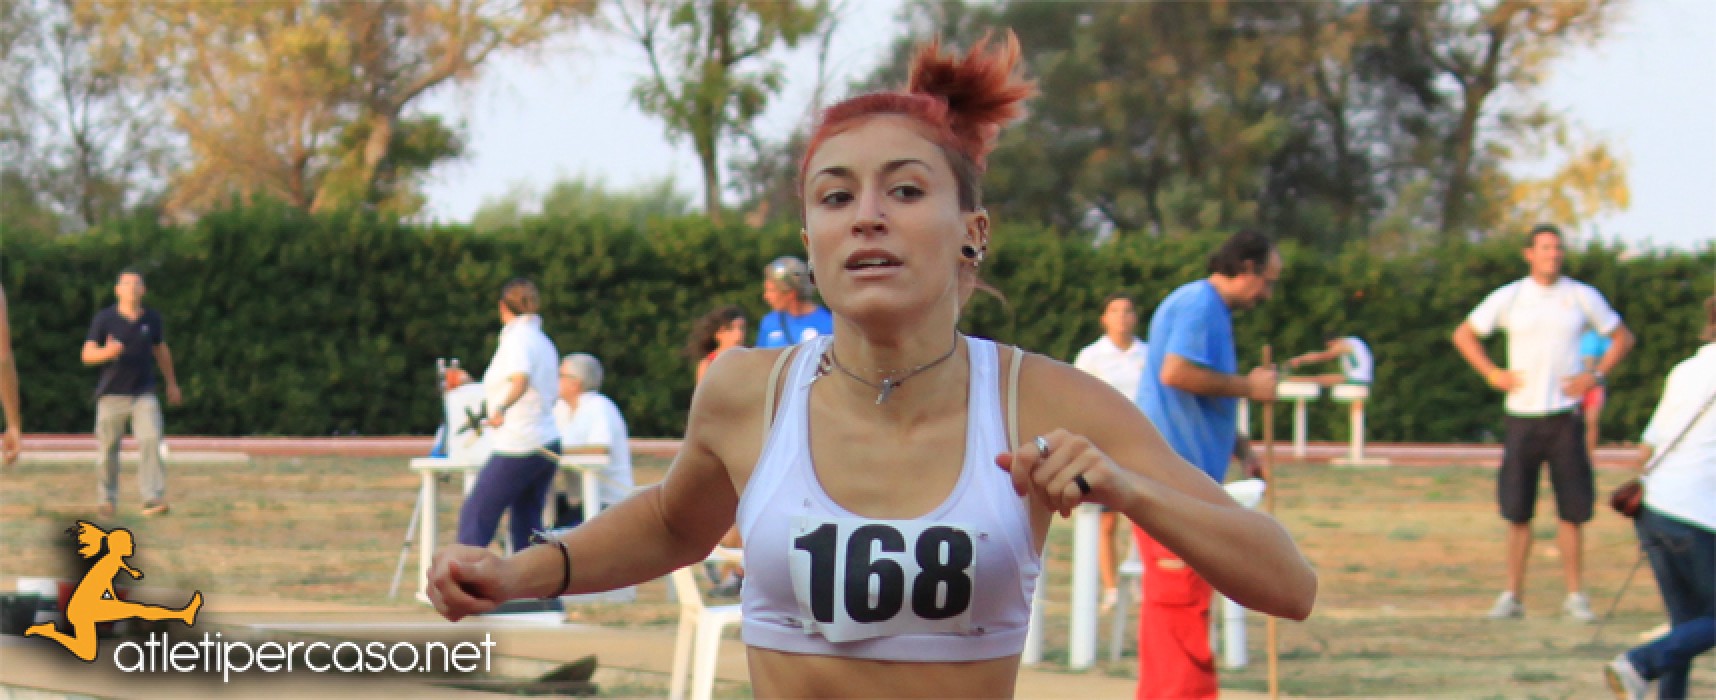 Atletica, argento nei 400 m. per Lucia Pasquale ai campionati italiani Juniores